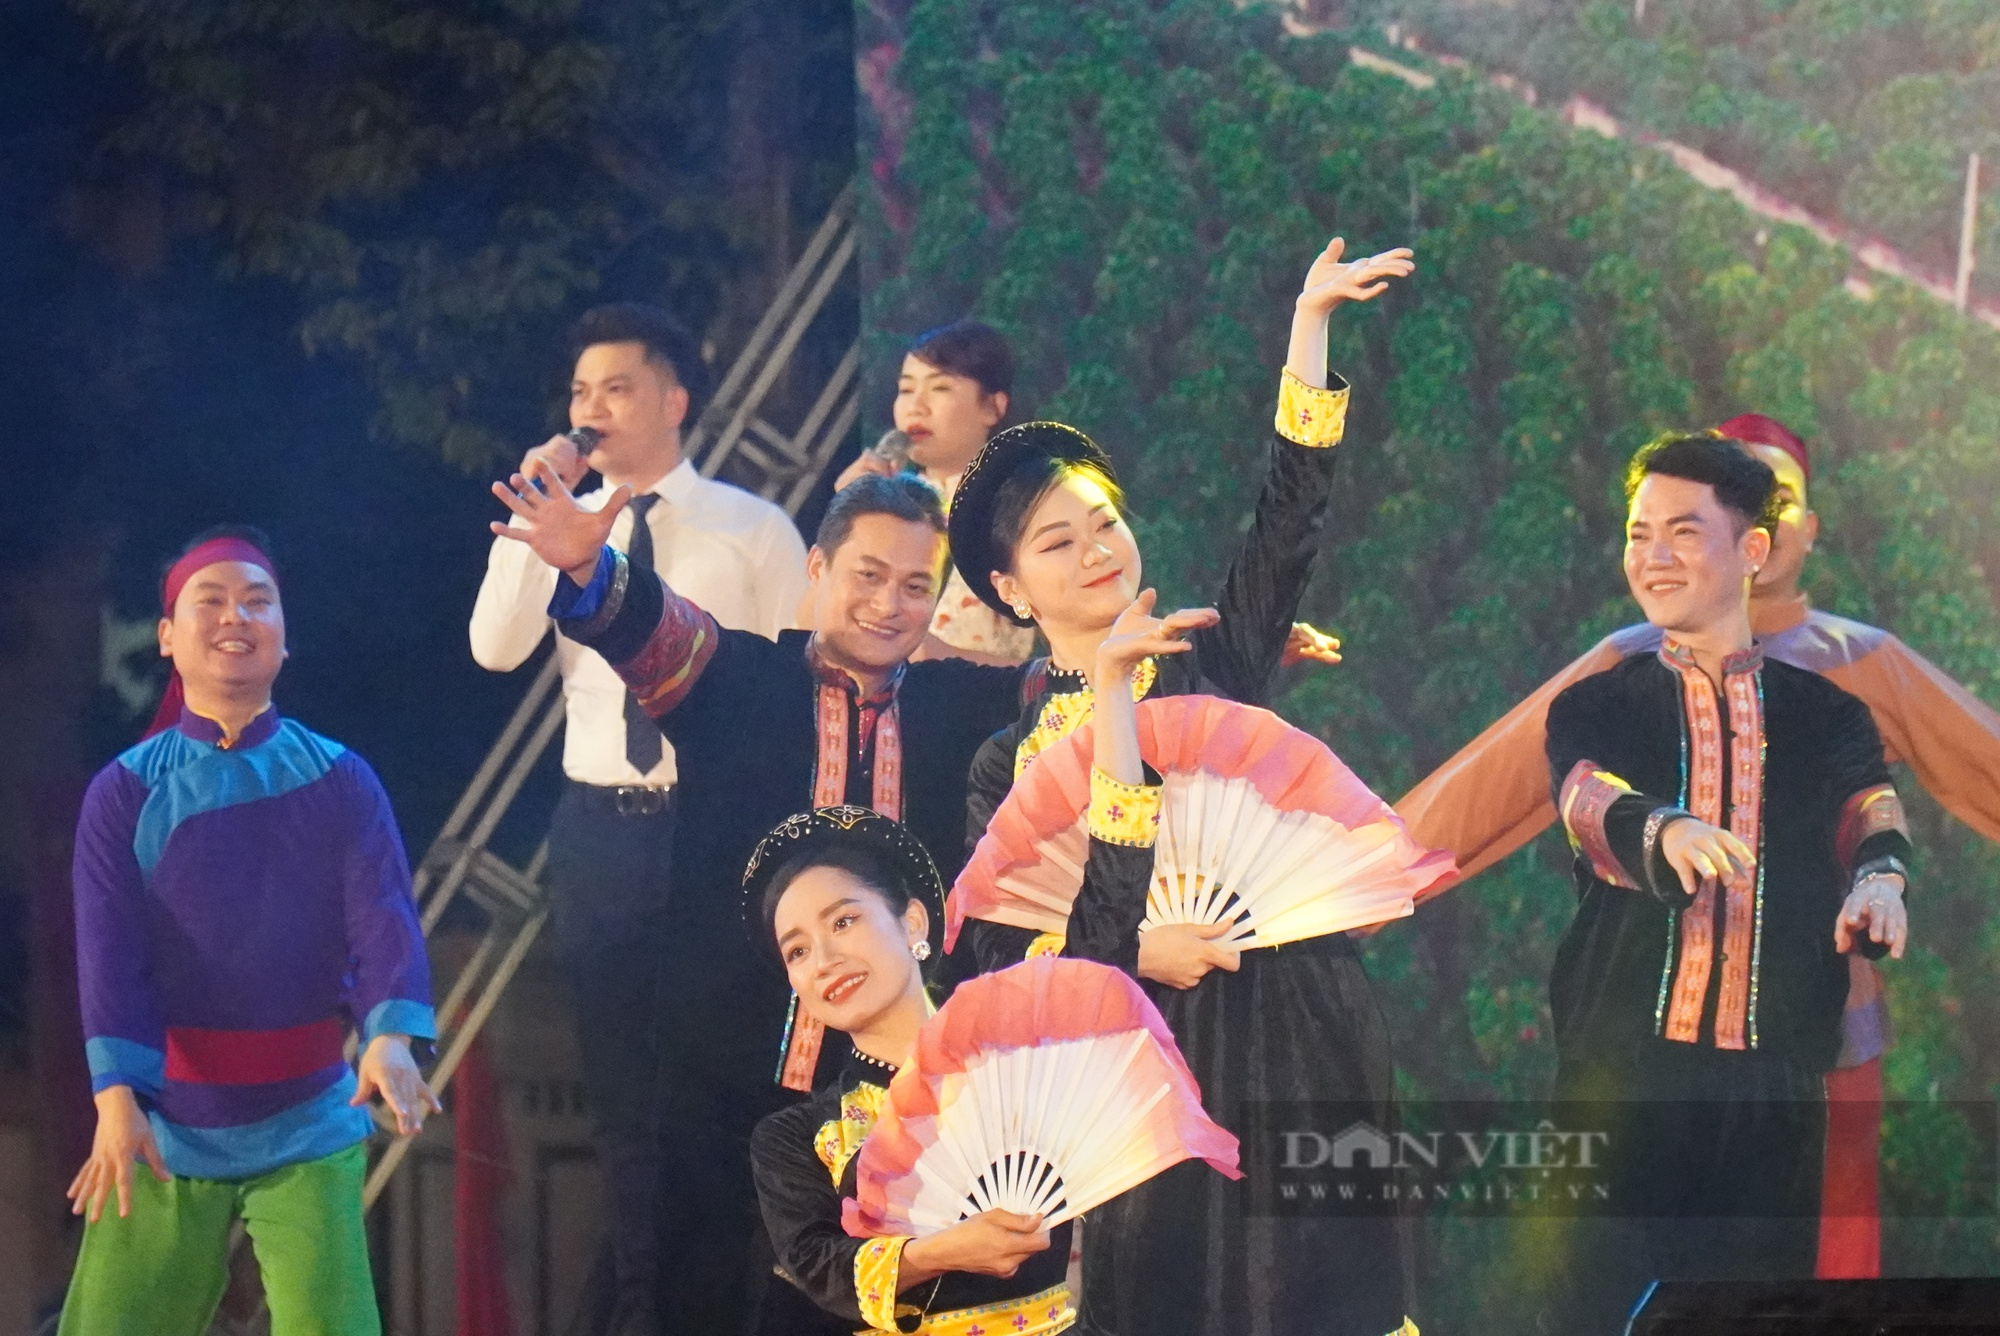 Là một trong 4 lễ hội lớn ở Bắc Giang, ngày hội văn hóa thể thao các dân tộc Lục Ngạn có gì hấp dẫn? - Ảnh 2.